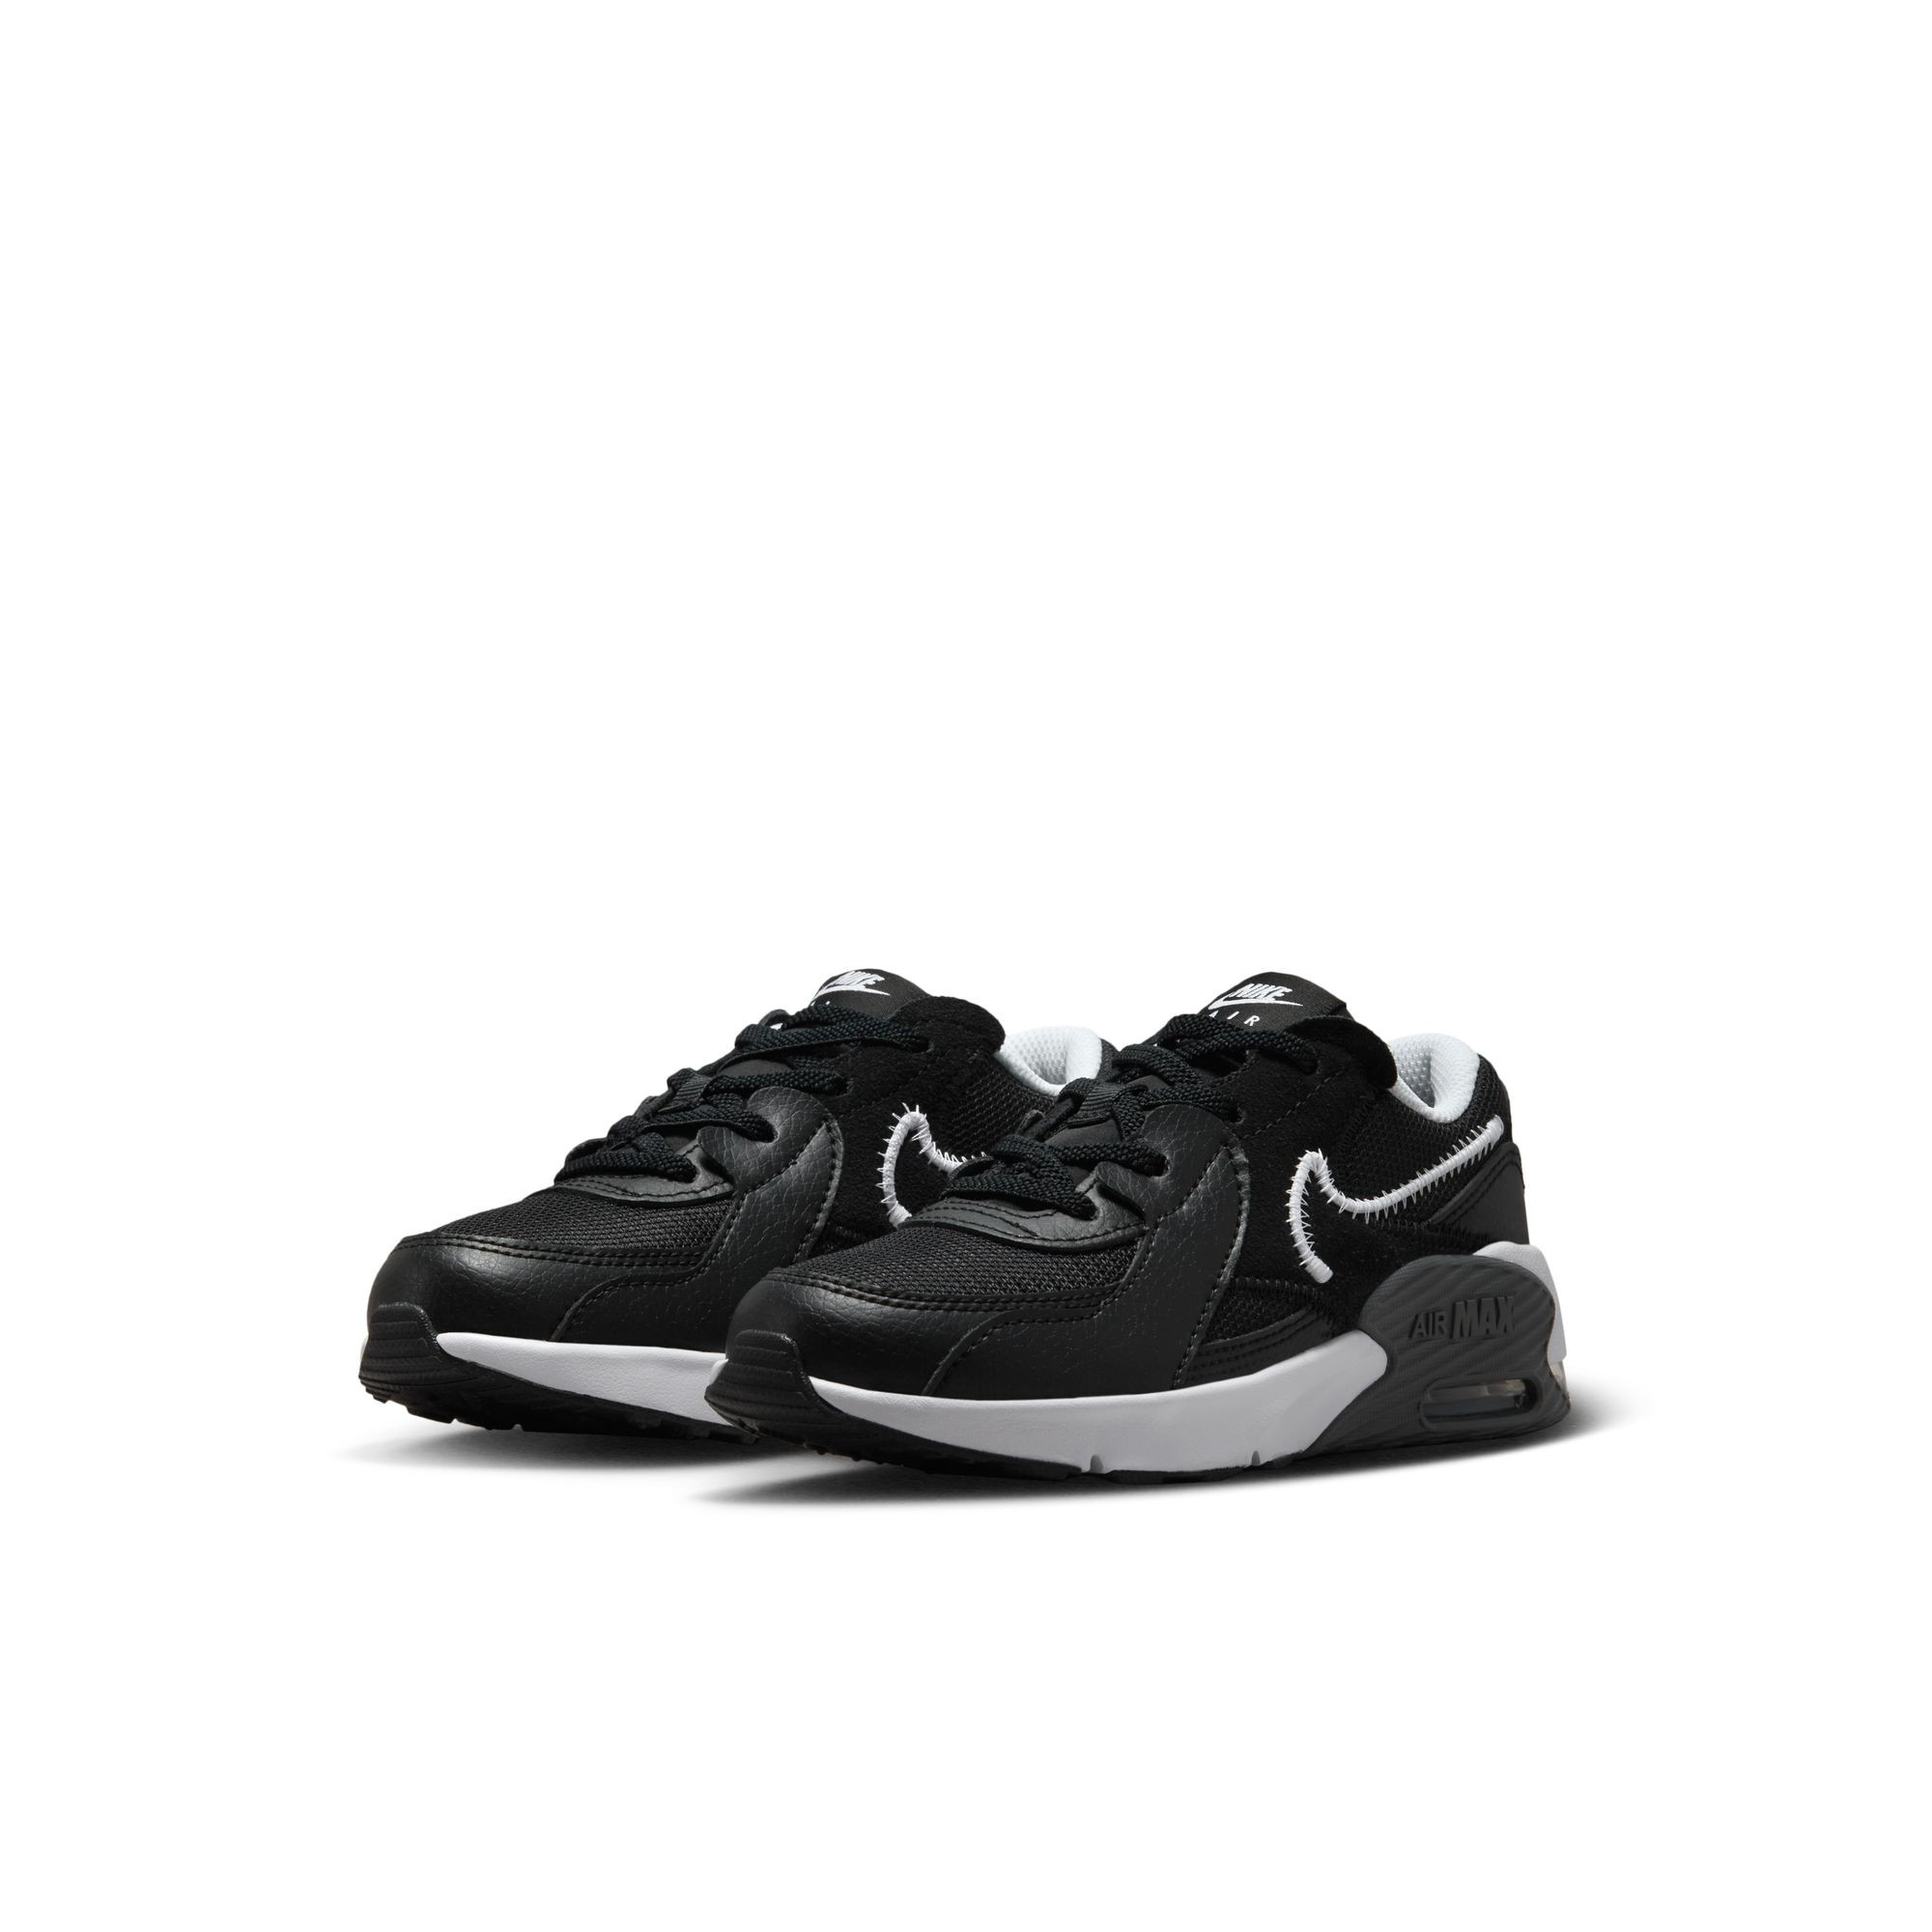 Shoes Nike Air Max Excee - Black/White-Dark Gray - FB3059-002